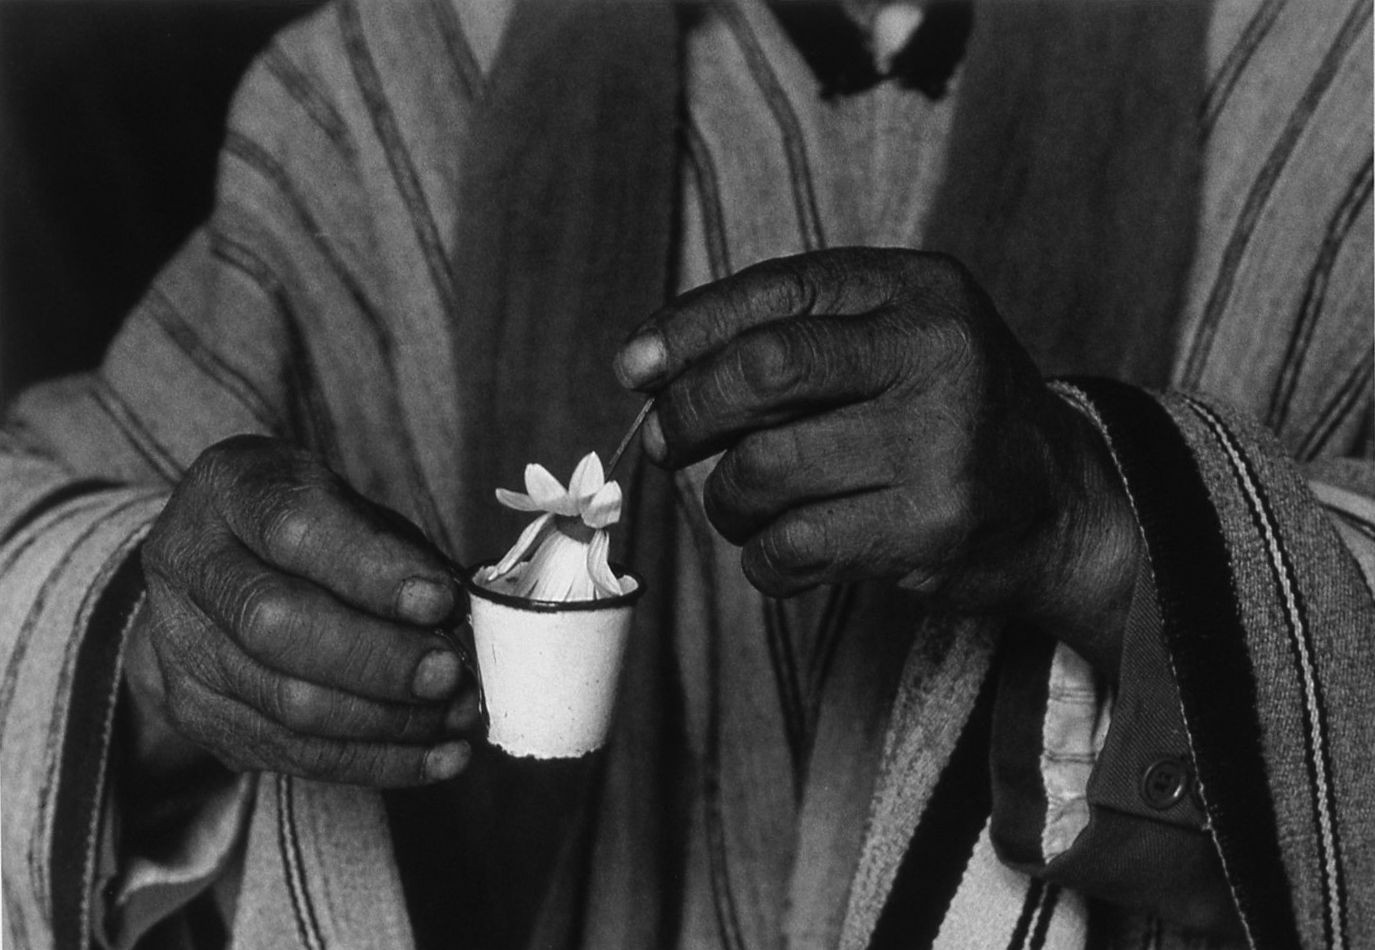 Благословение, Боливия, 1990. Фотограф Флор Гардуньо